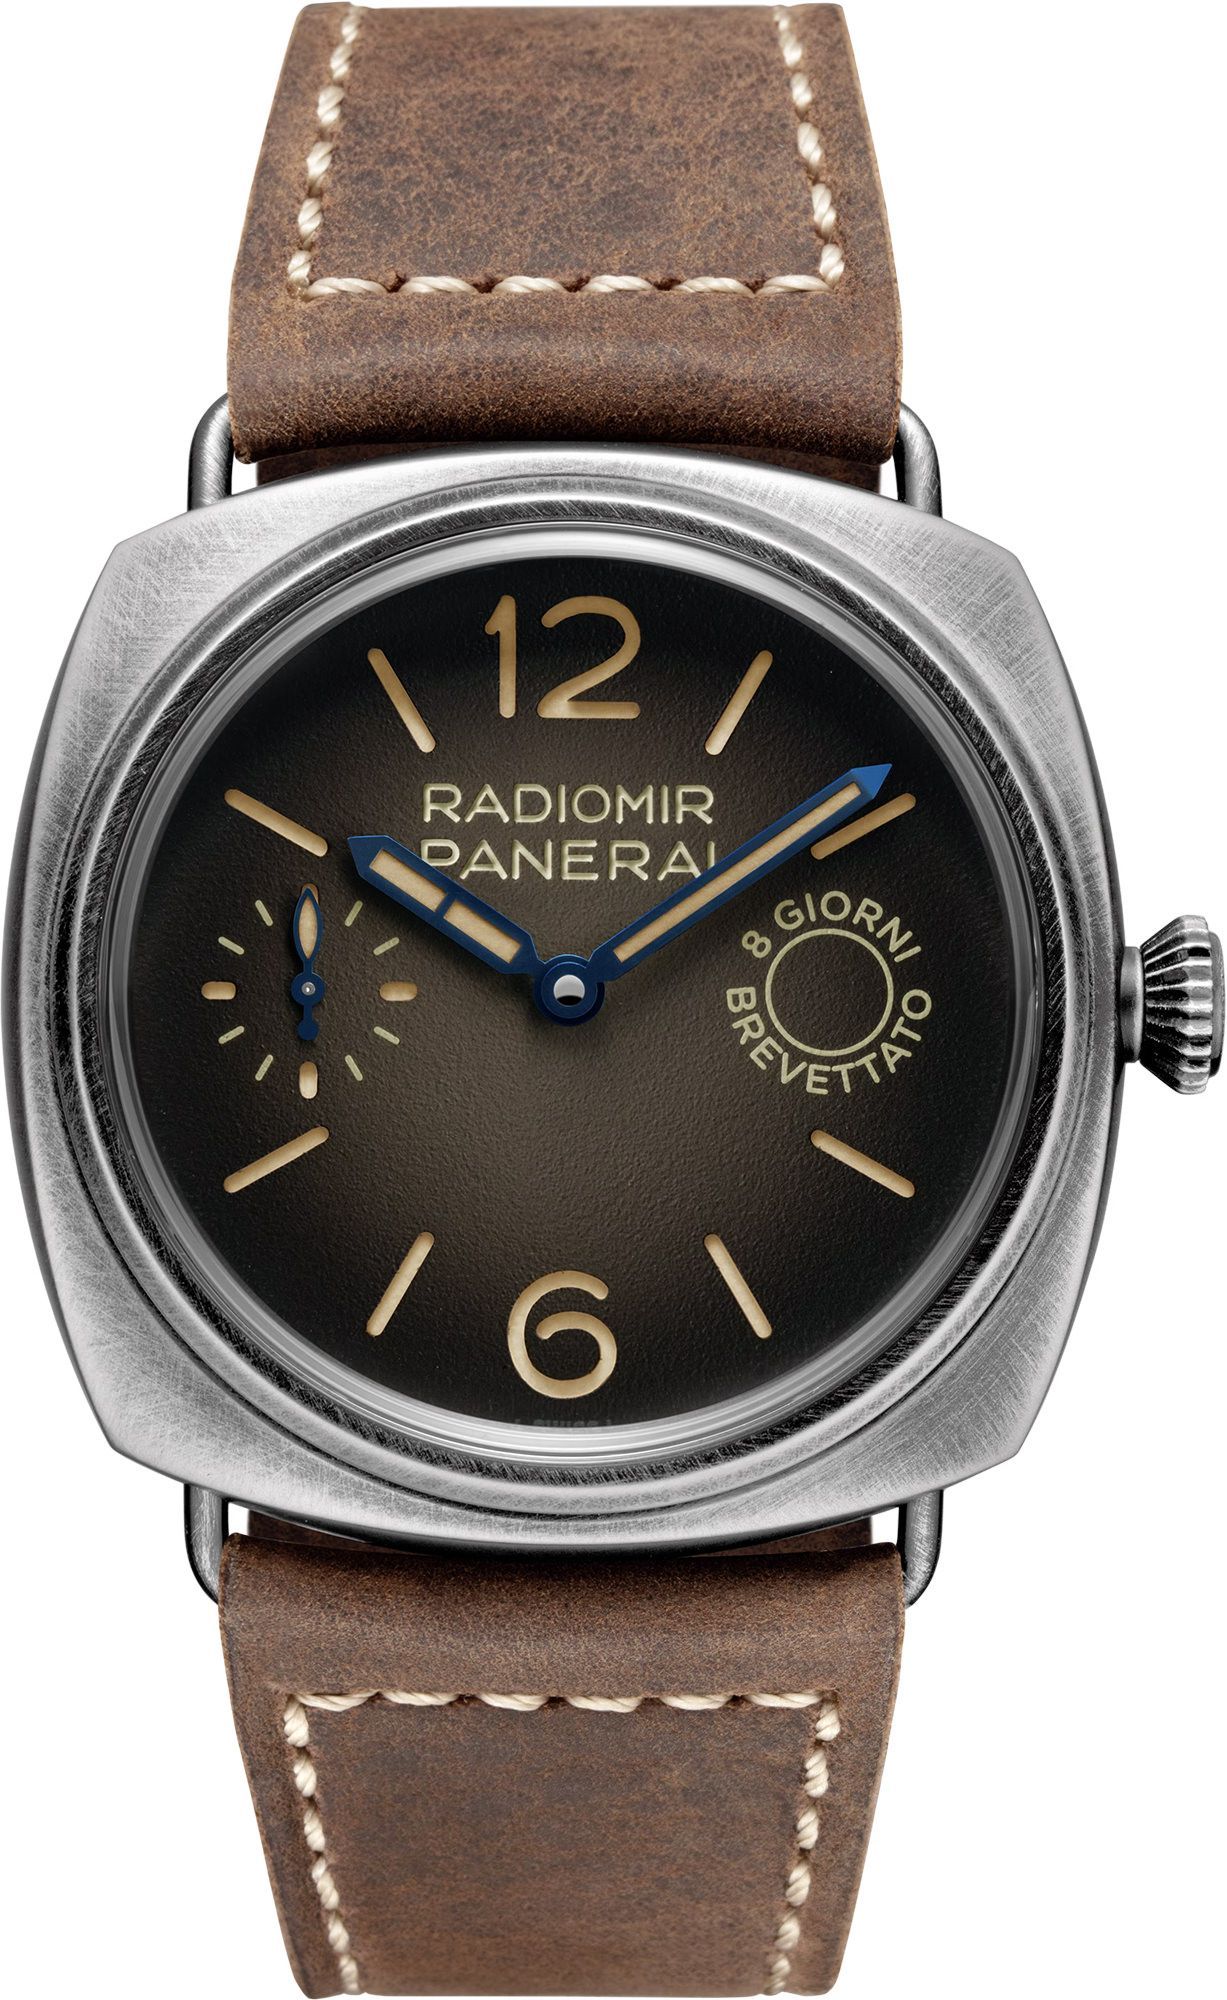 Panerai Radiomir  Brown Dial 45 mm Manual Winding Watch For Men - 1